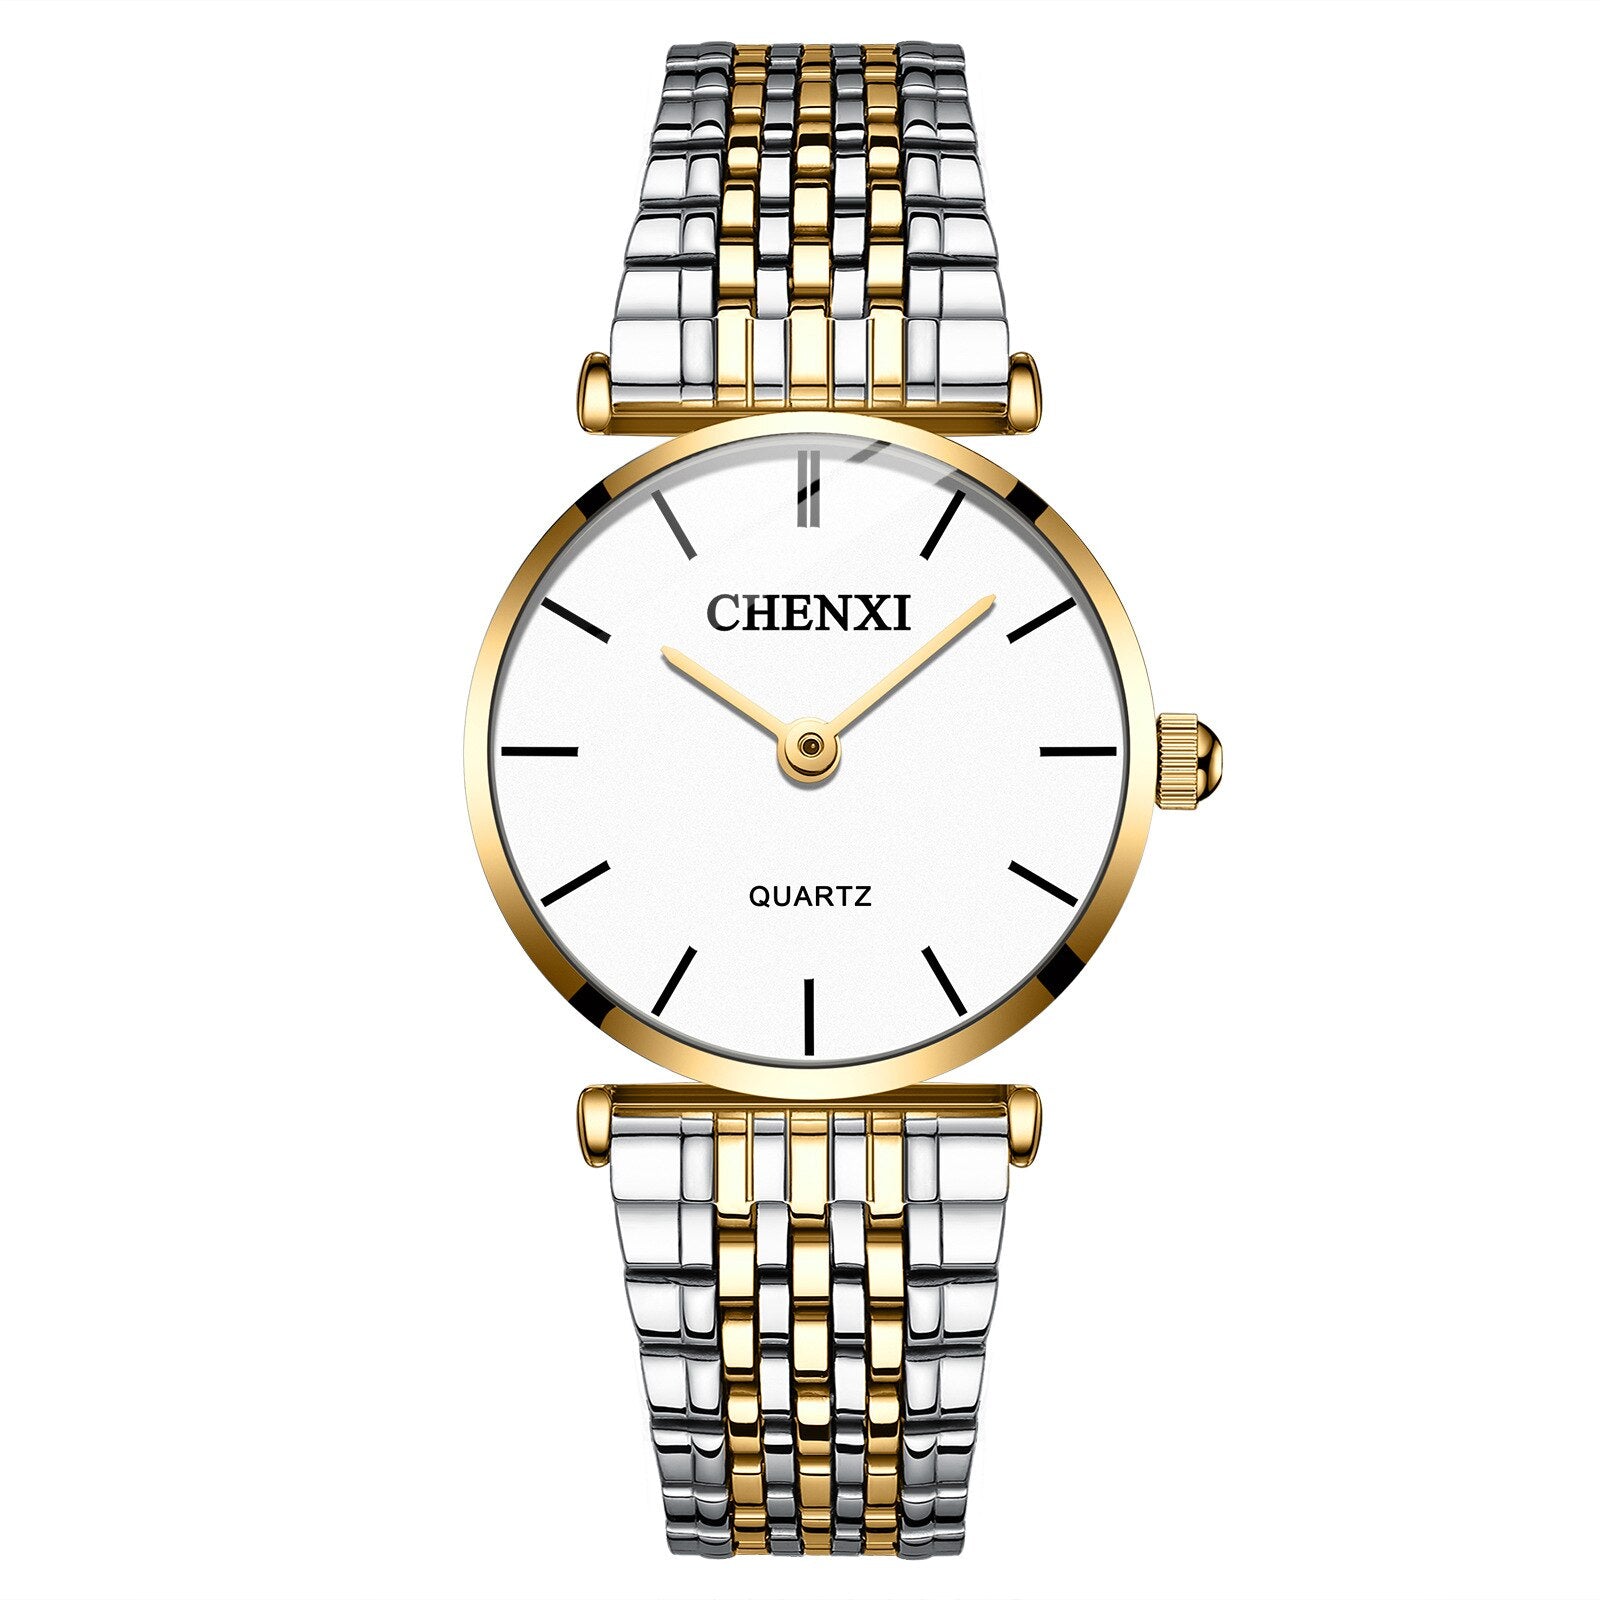 CHENXI Brand Luxury Men Watches Fashion Waterproof Quartz Wrist Watch For Men Women Stainless Steel Analog Wristwatches